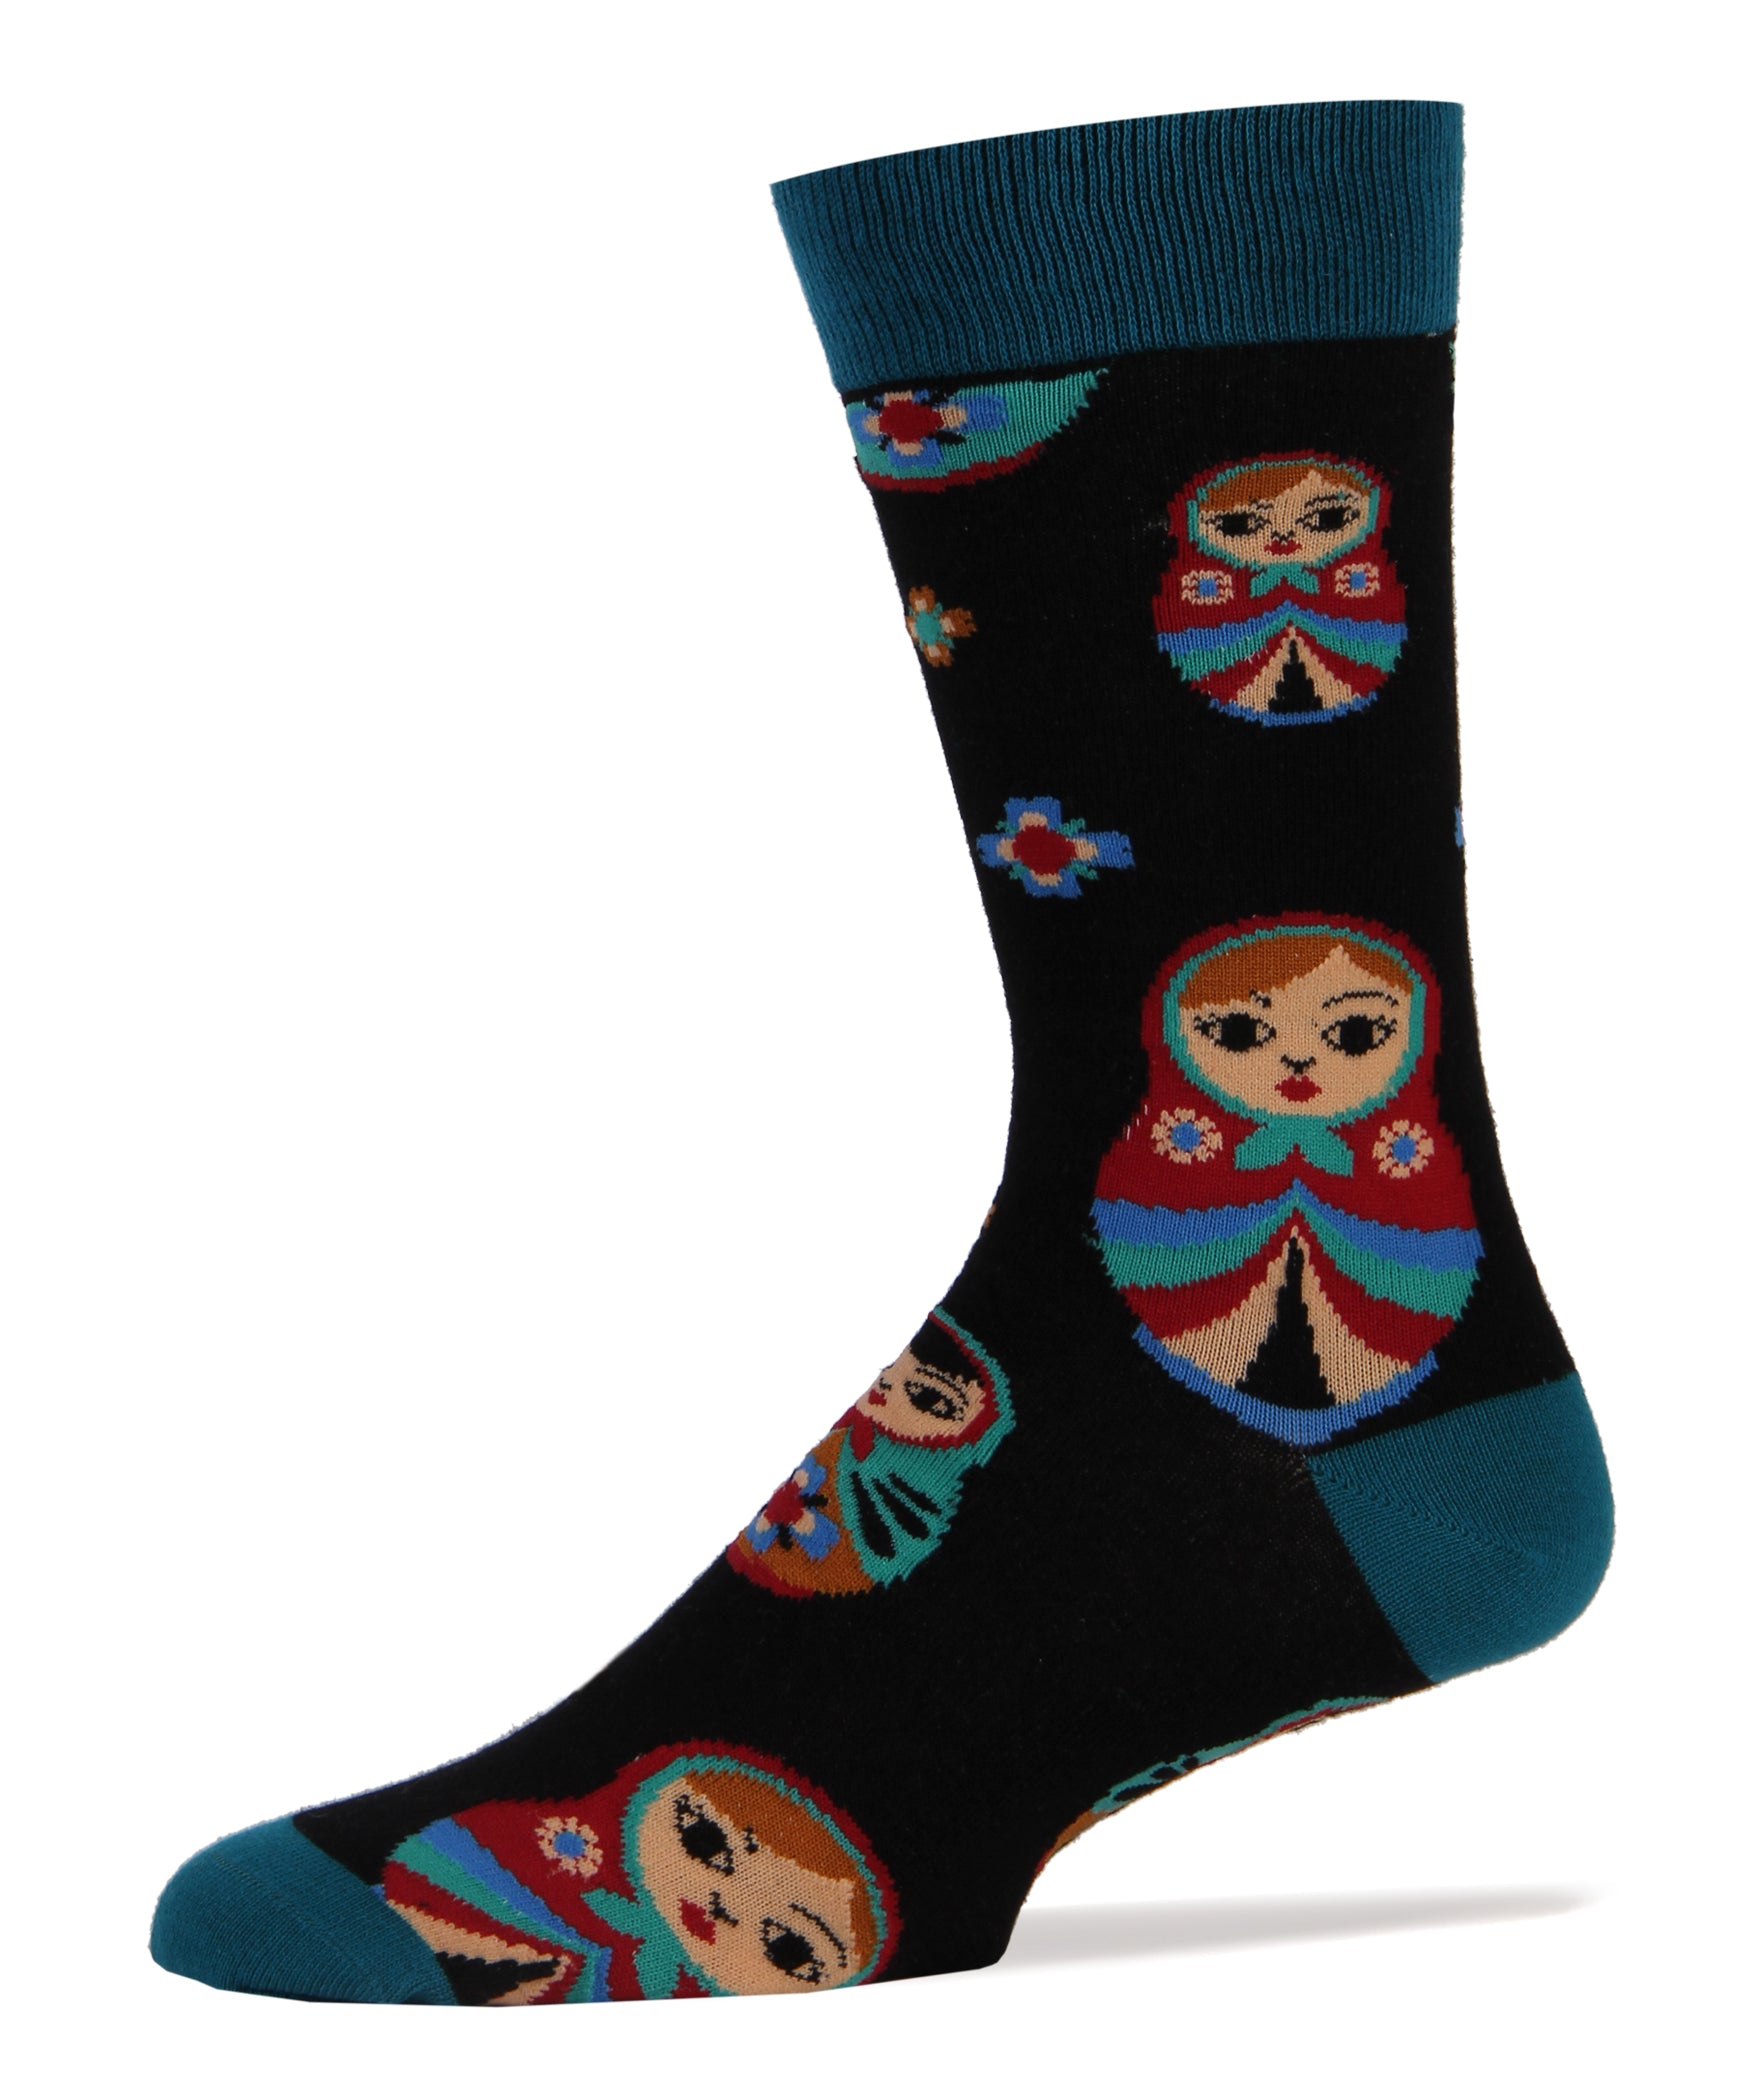 Matryoshka Socks | Novelty Crew Socks For Men